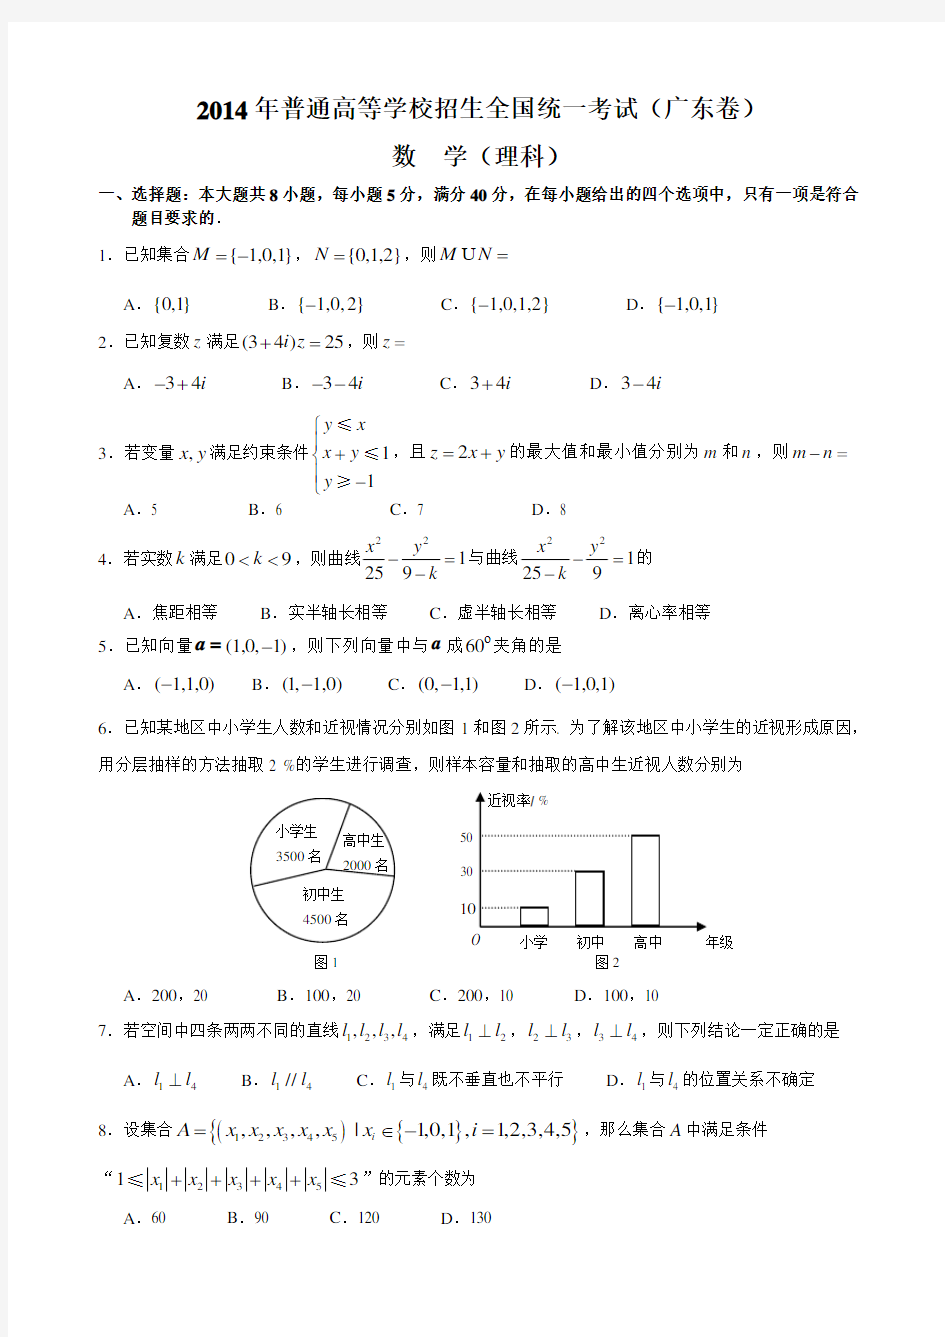 高考理科数学(广东卷)试题及详细答案